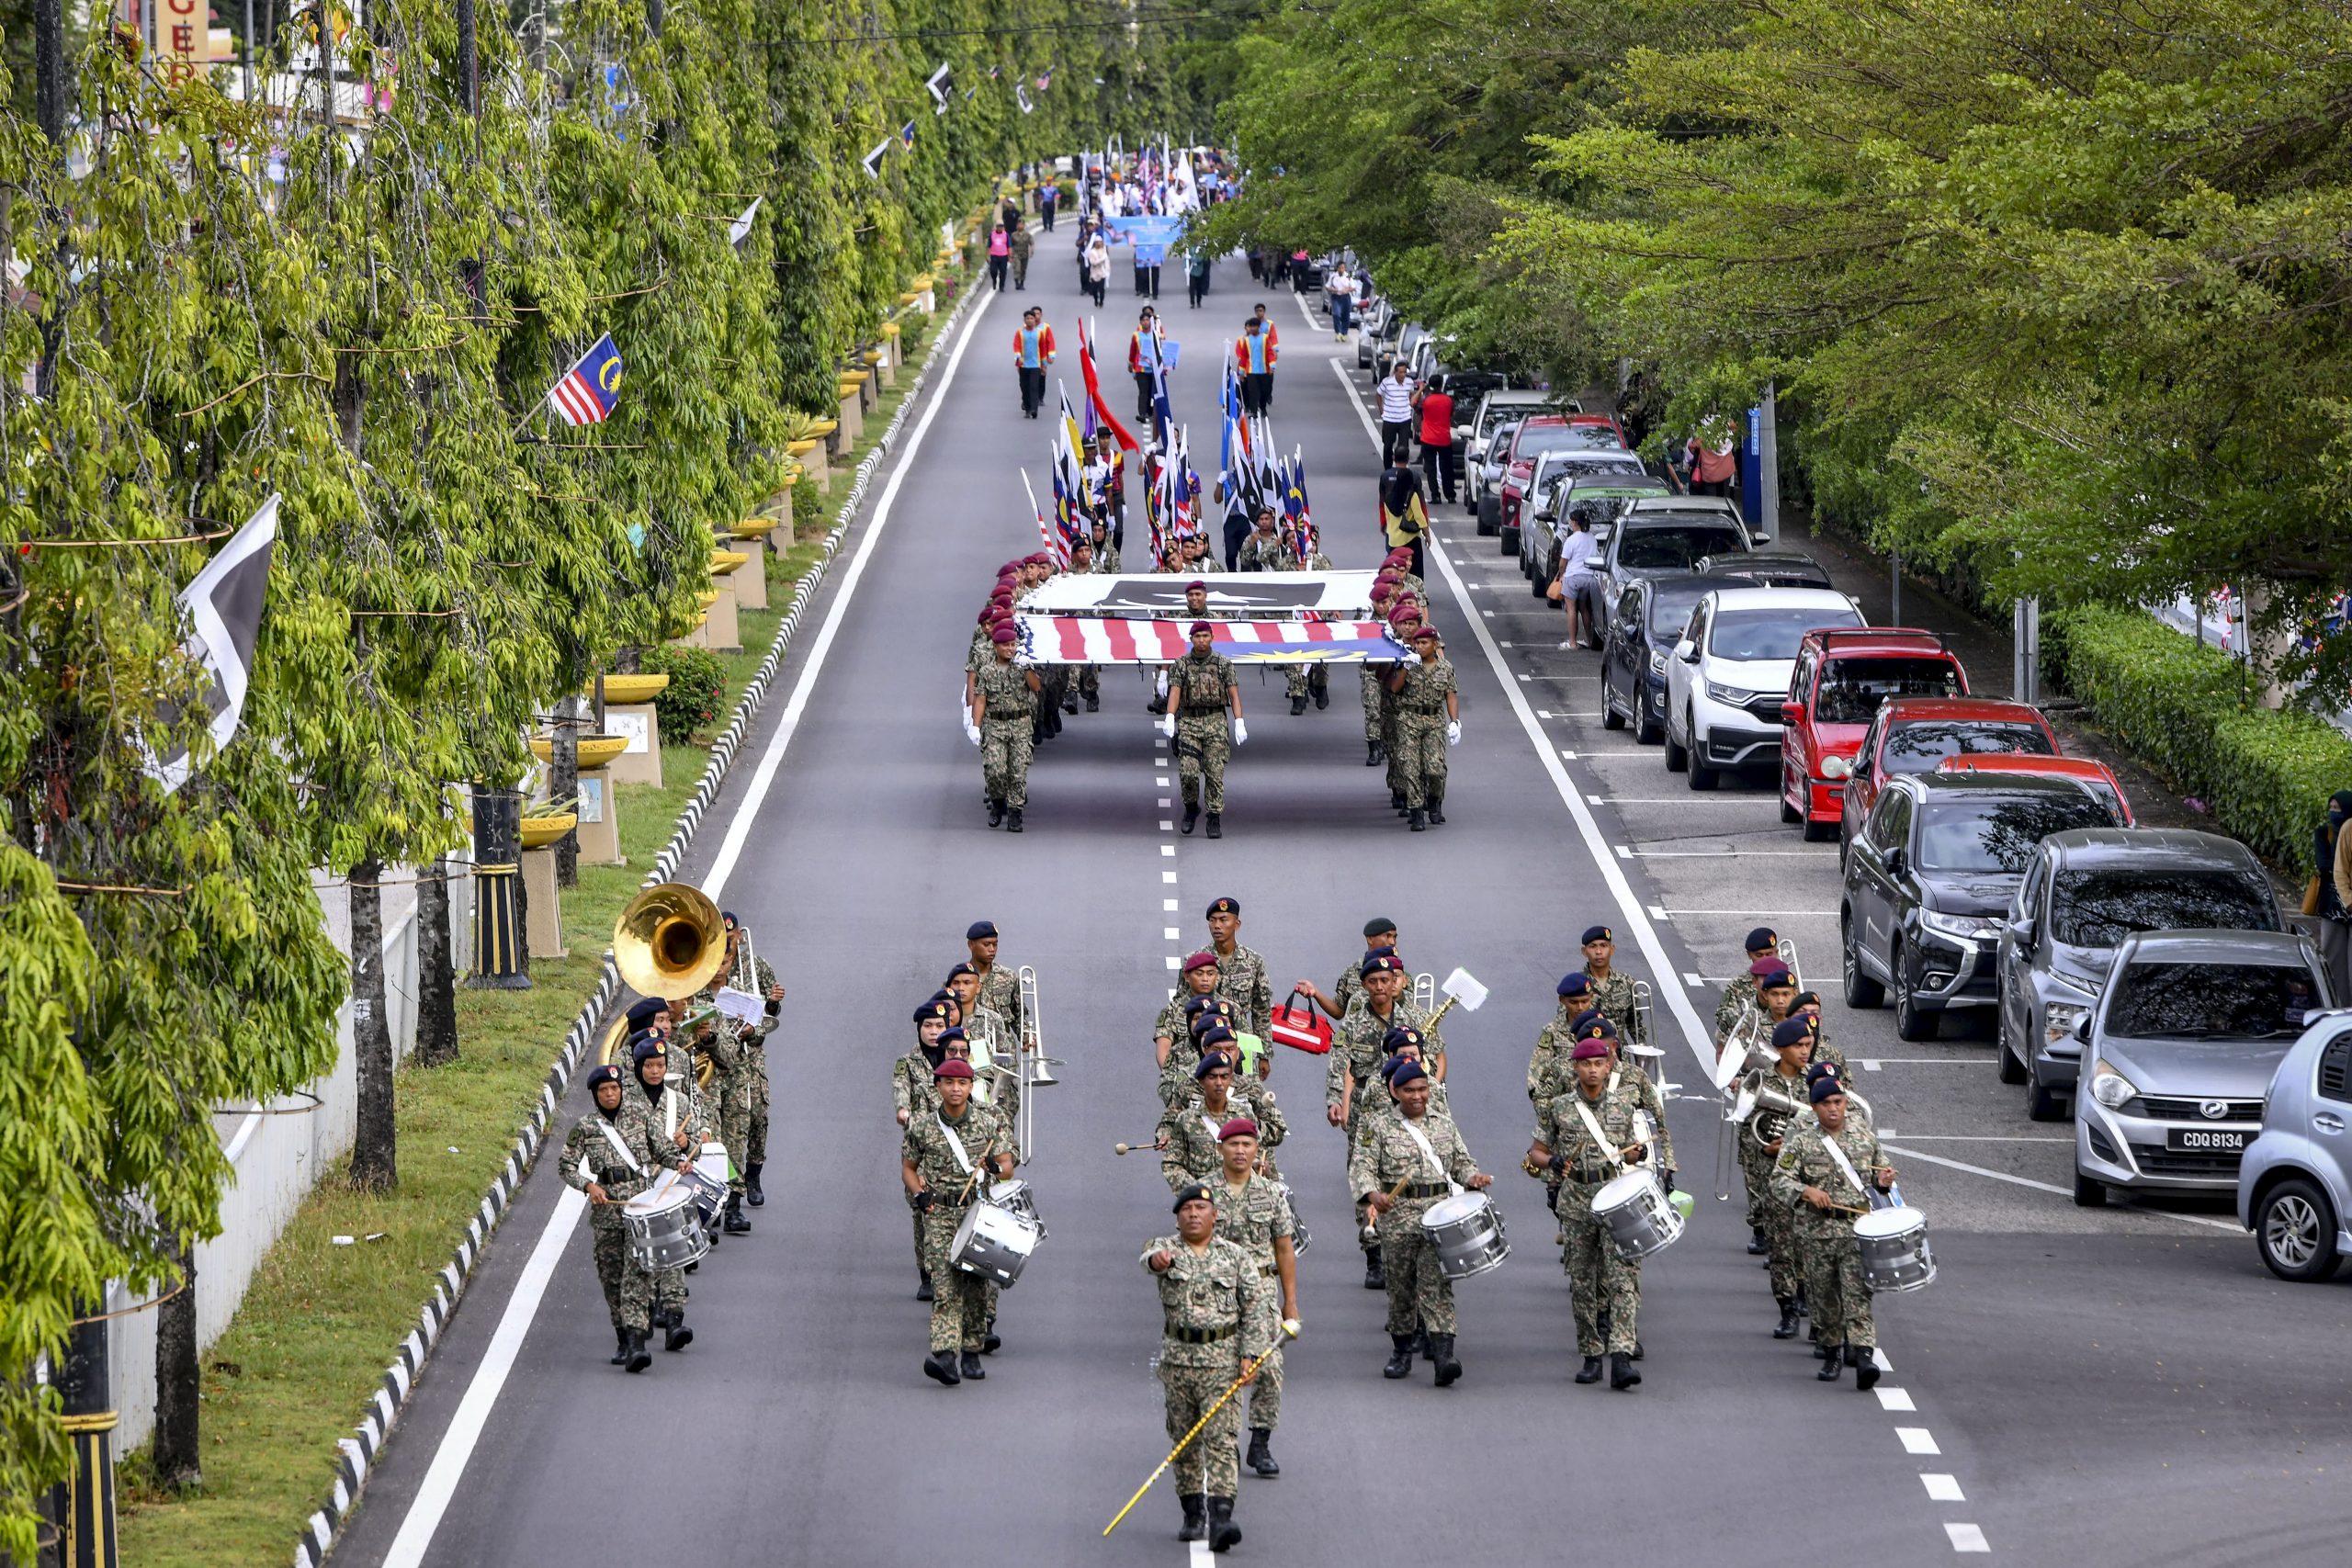 东：配合8月31日在峇都布洛广场举办的第65届国庆日庆典活动，警方将关闭市区多条道路，以让活动顺利进行。